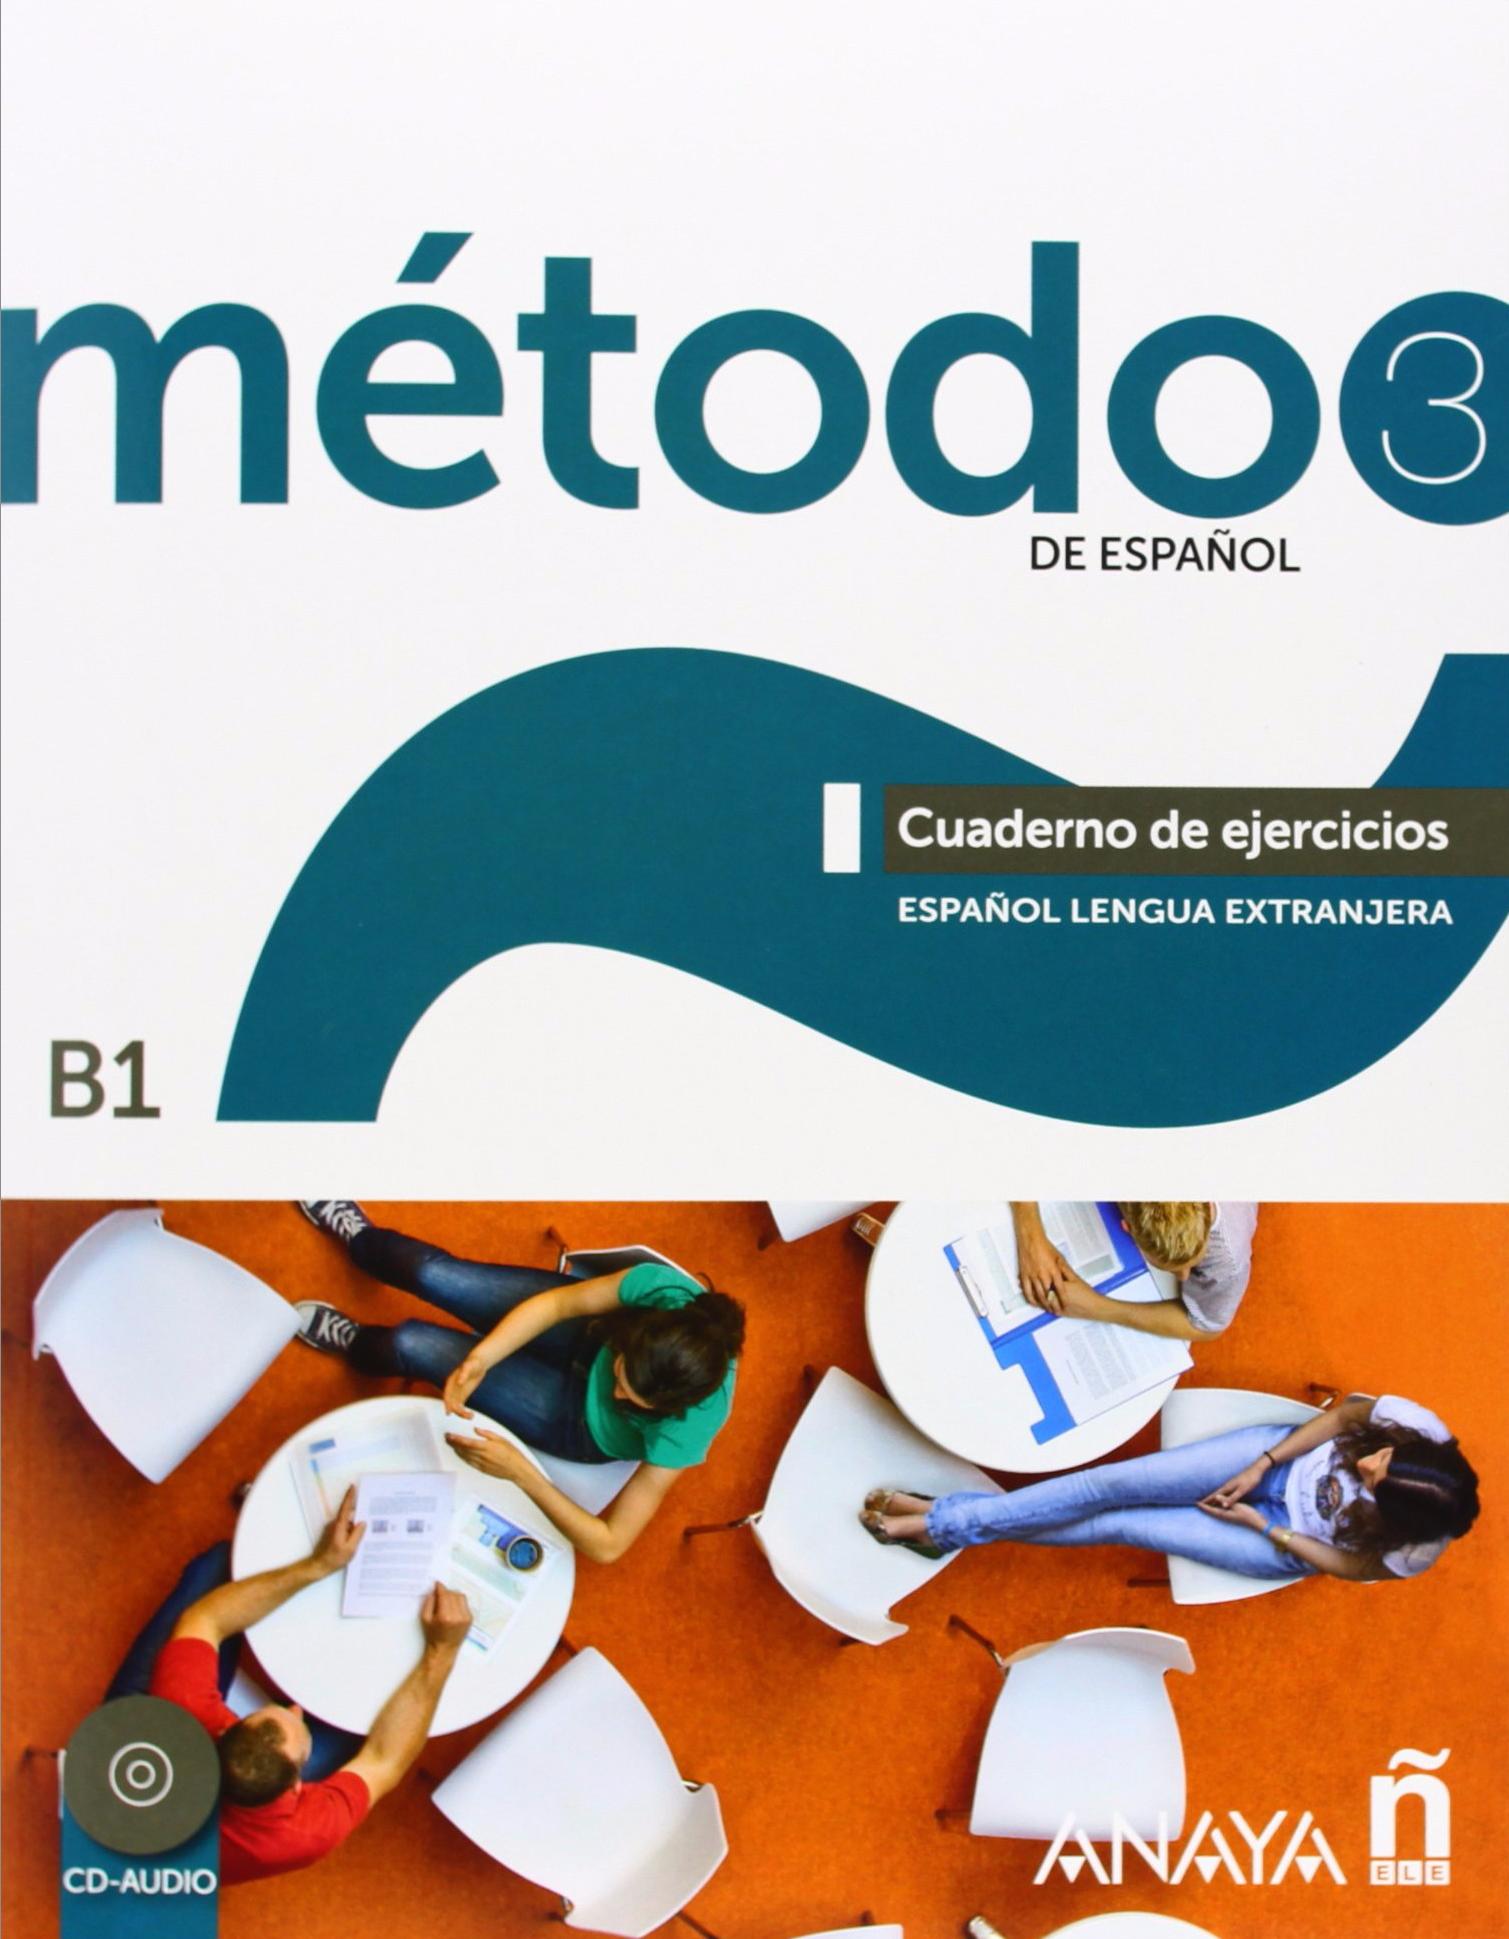 METOTDO DE ESPAÑOL 3  Cuaderno de ejercicios+ Audio CD